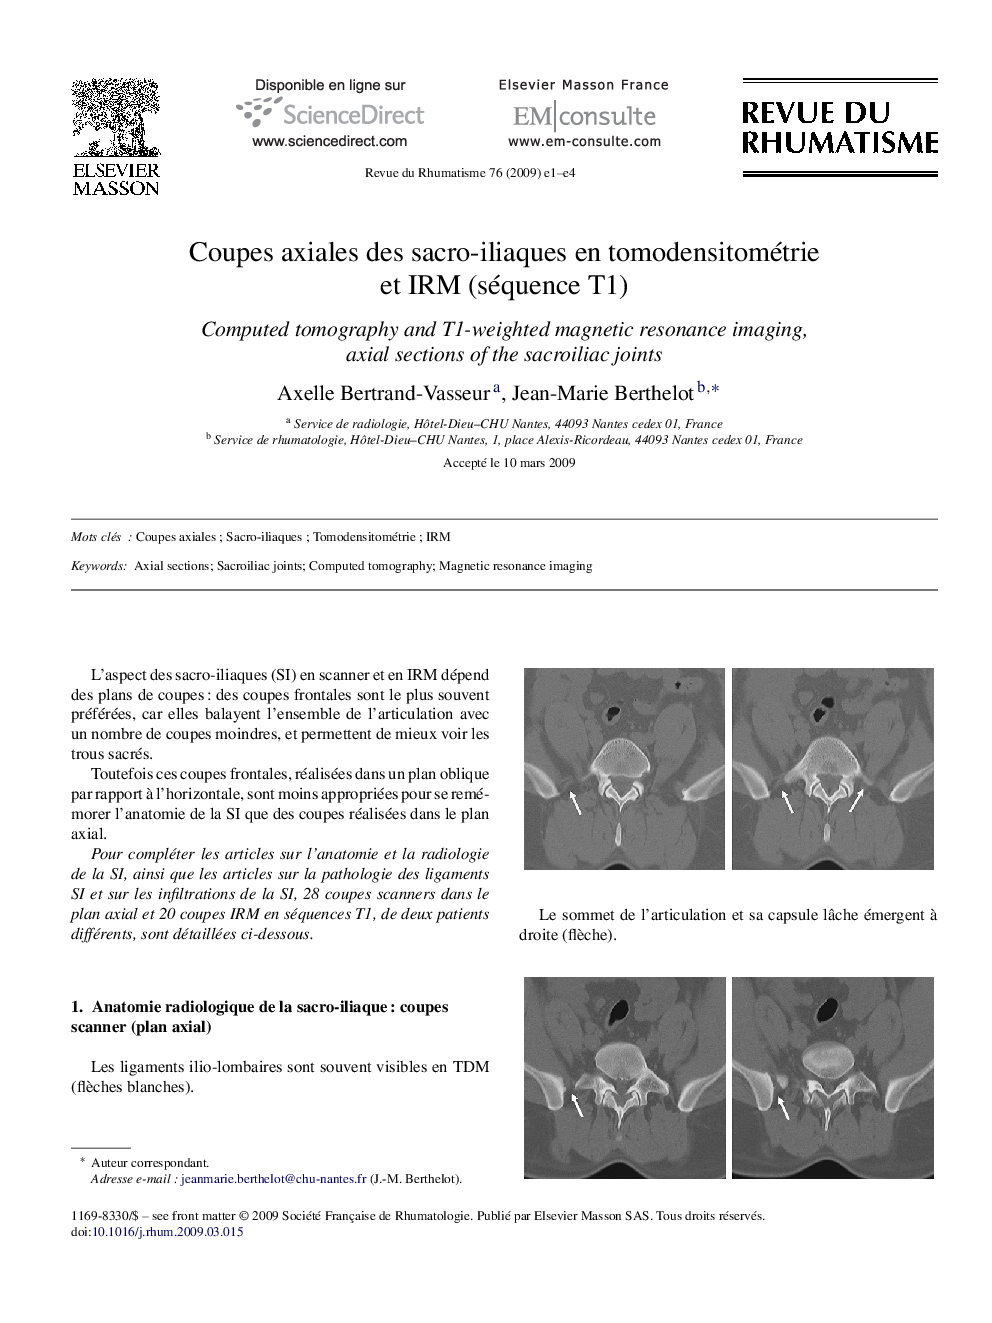 Coupes axiales des sacro-iliaques en tomodensitométrie et IRM (séquence T1)